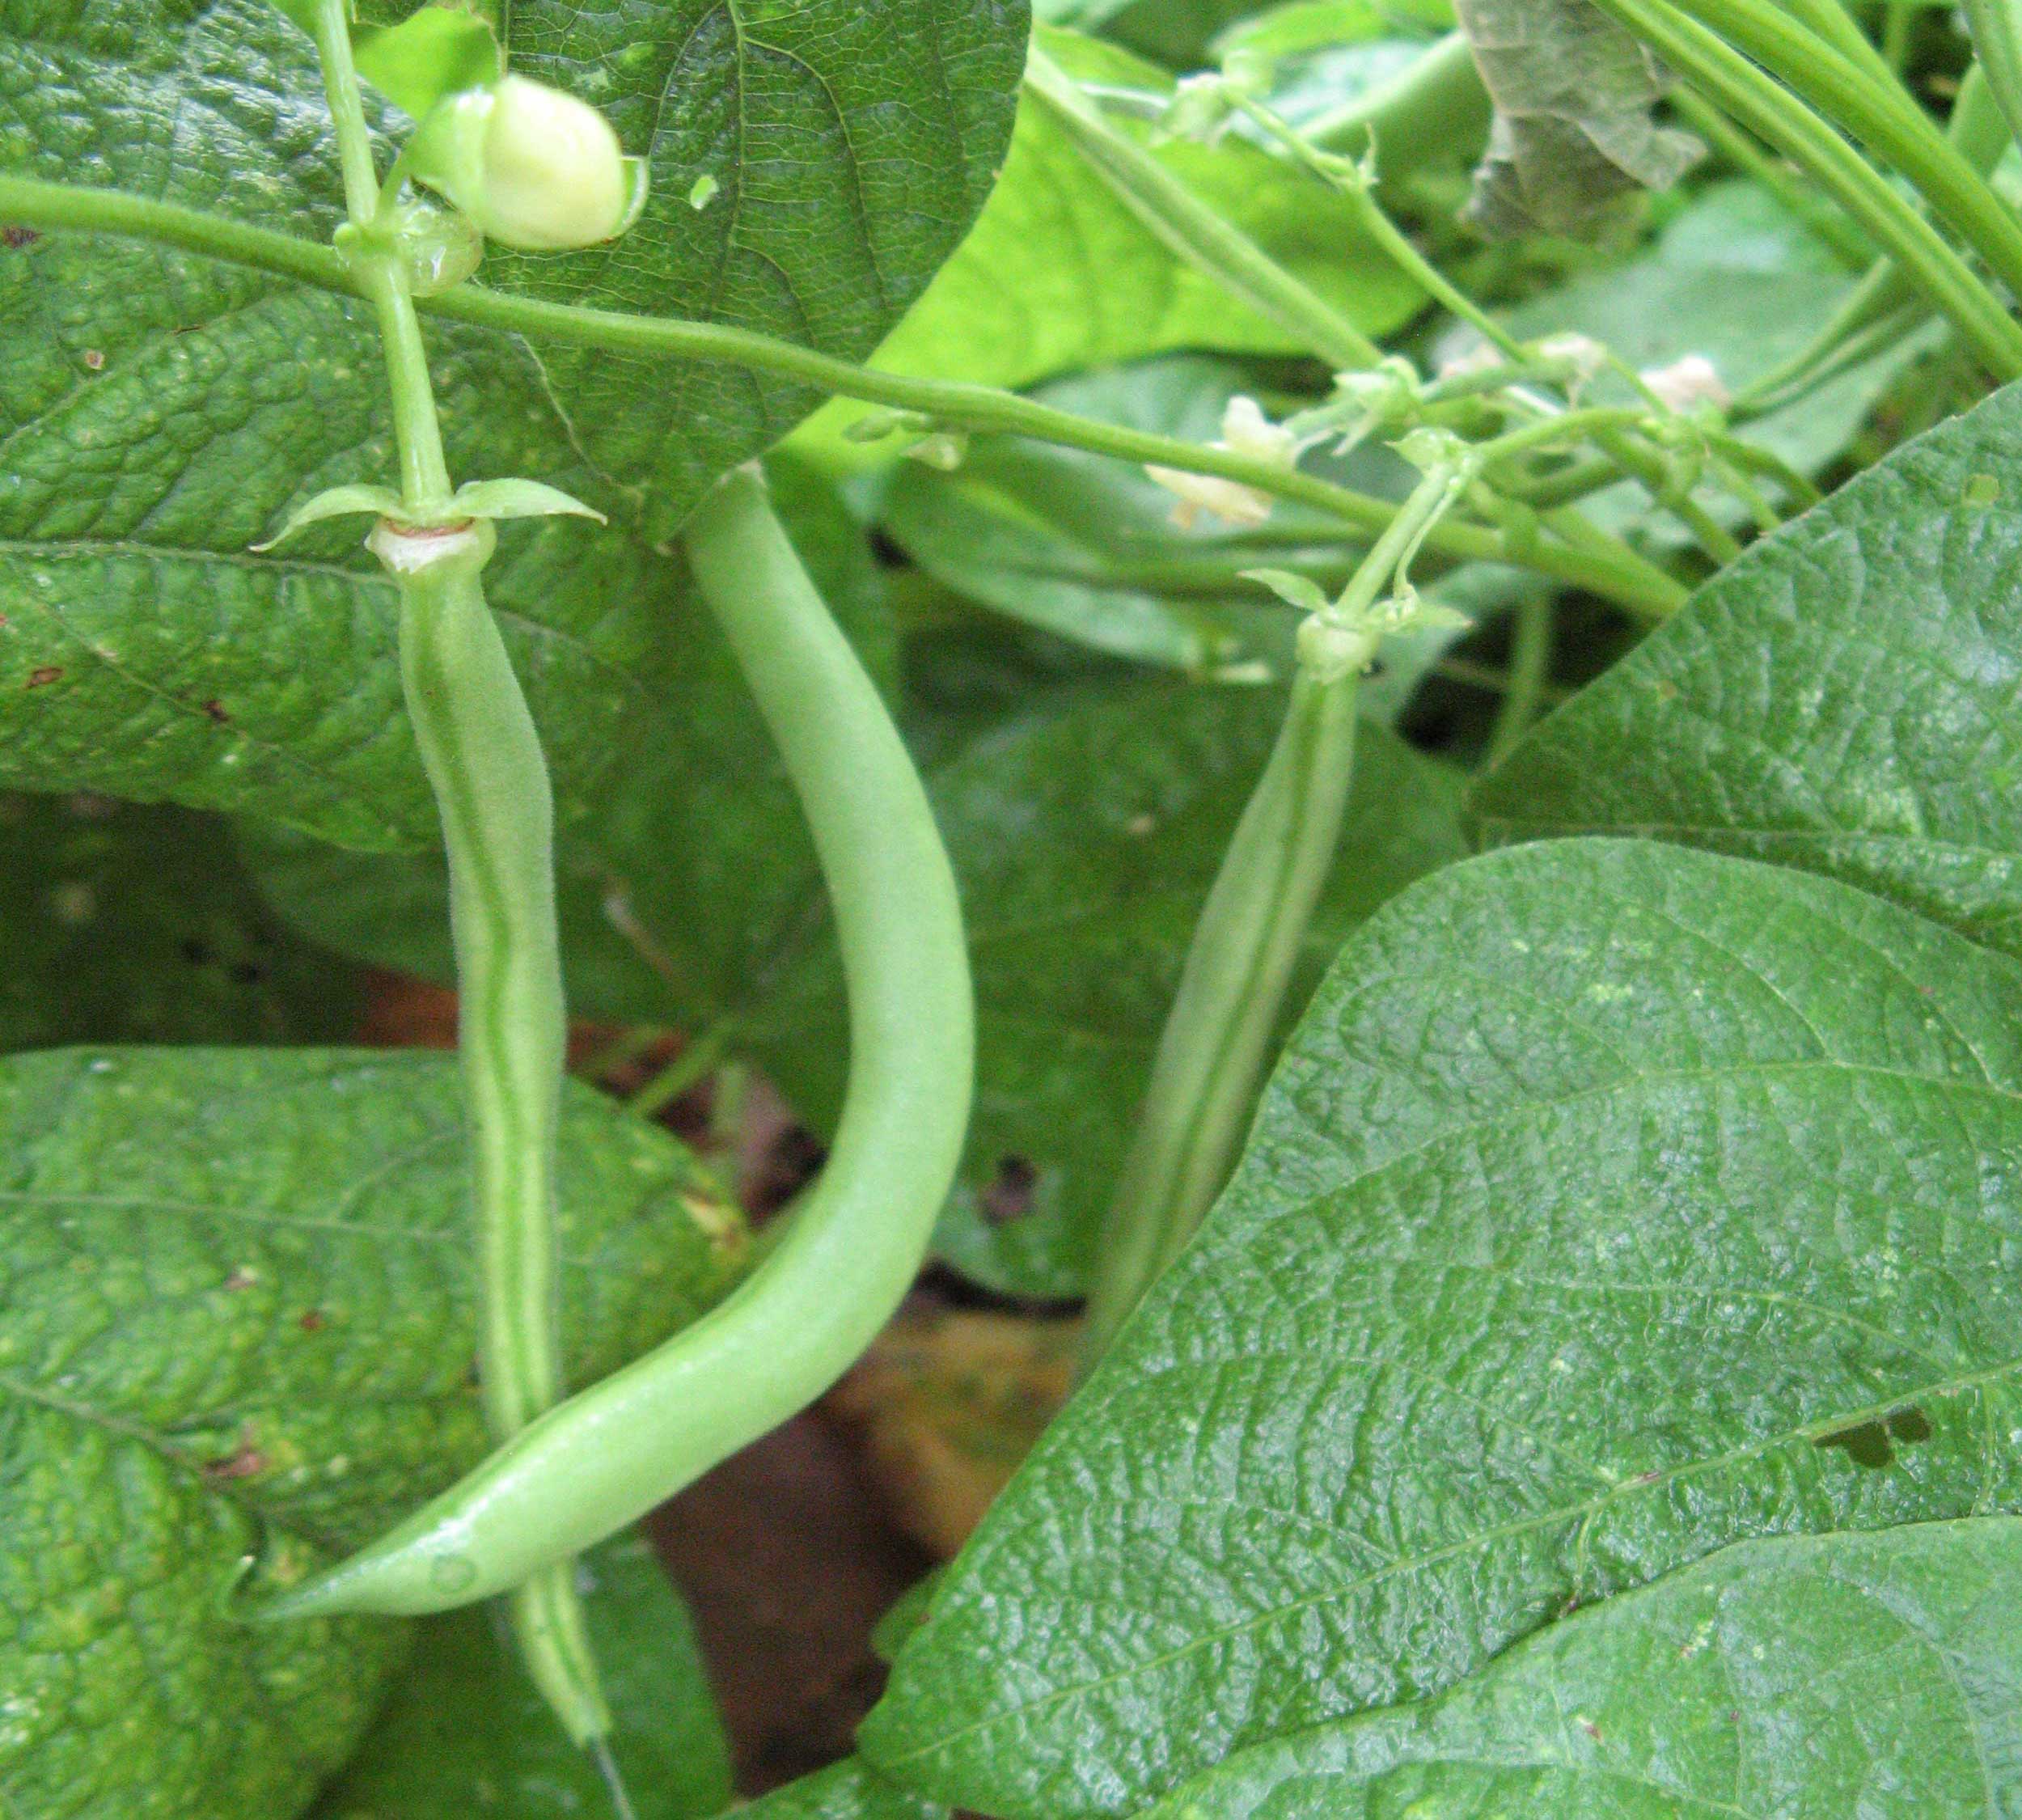 Green beans growing a garden.